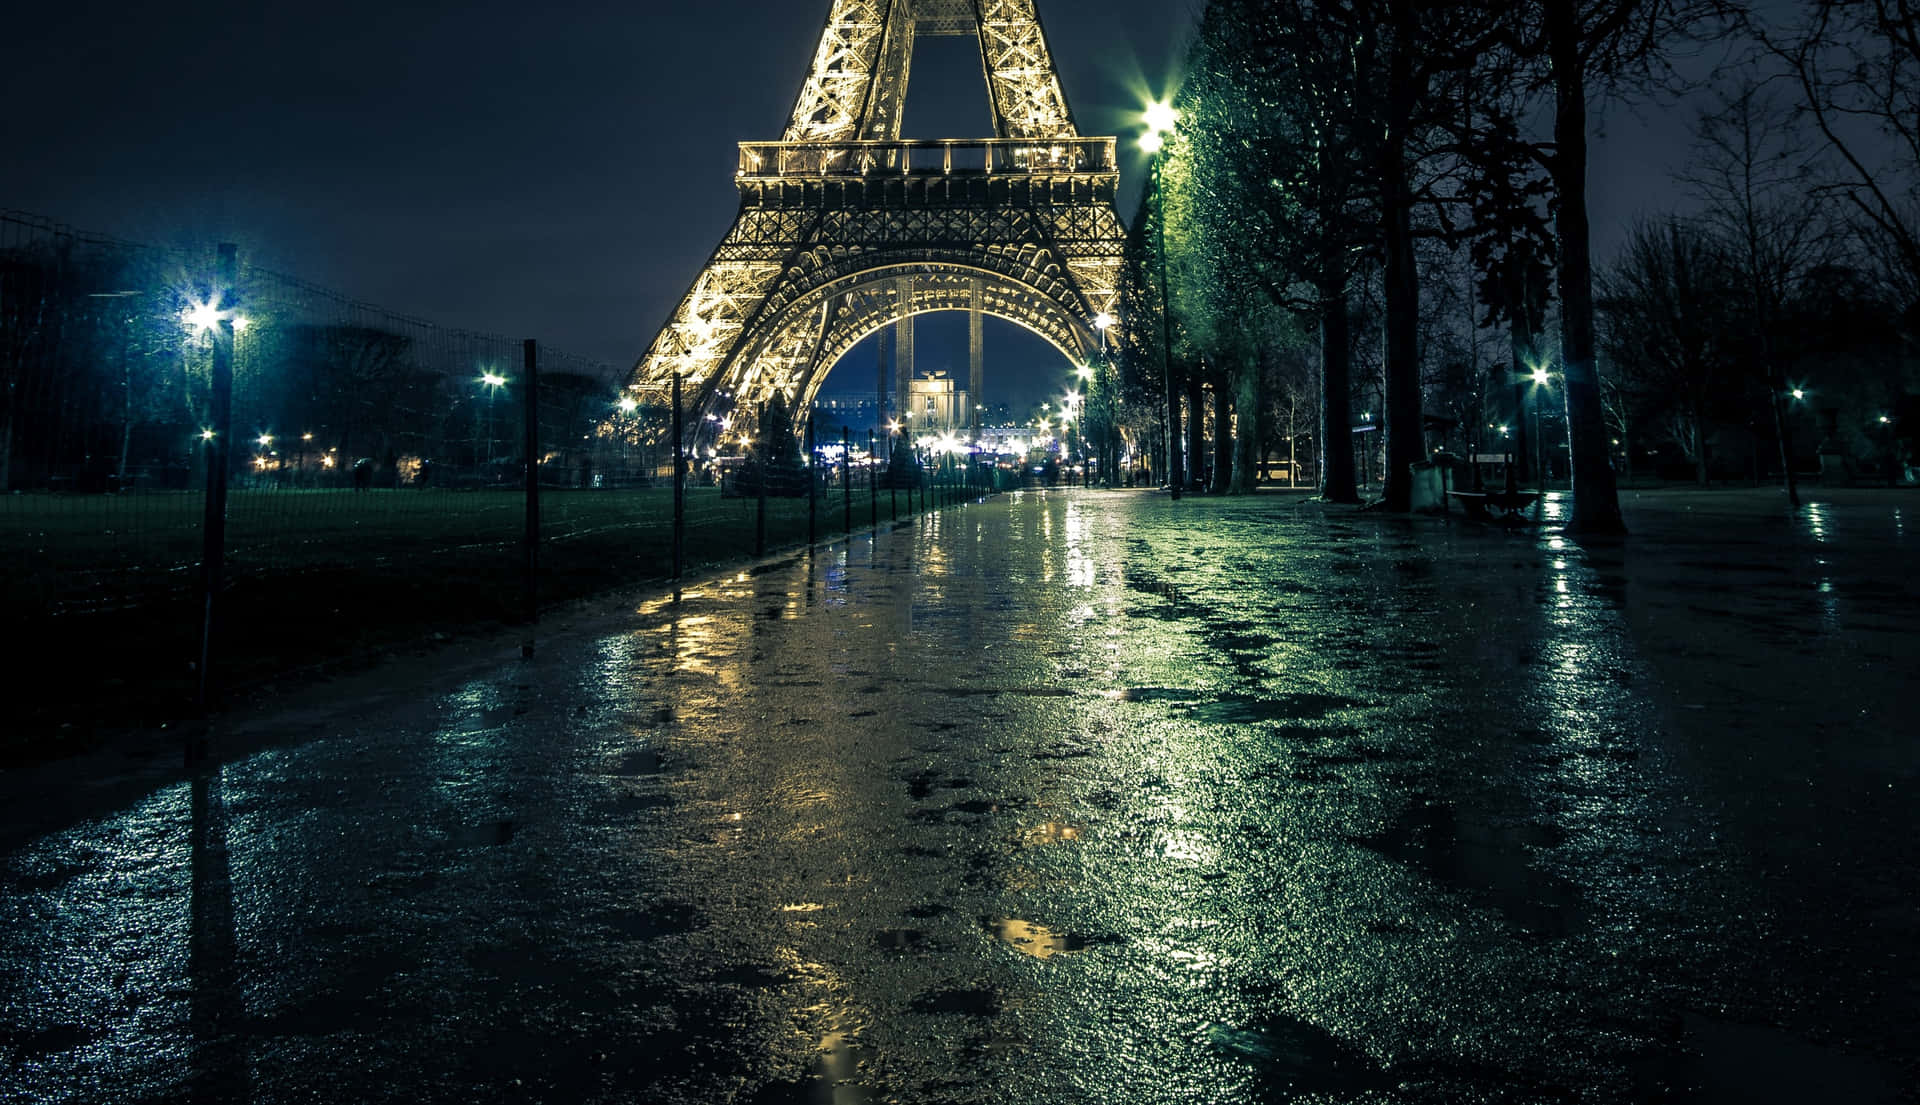 Imagende Torre Eiffel En La Calle Mojada Durante La Noche.